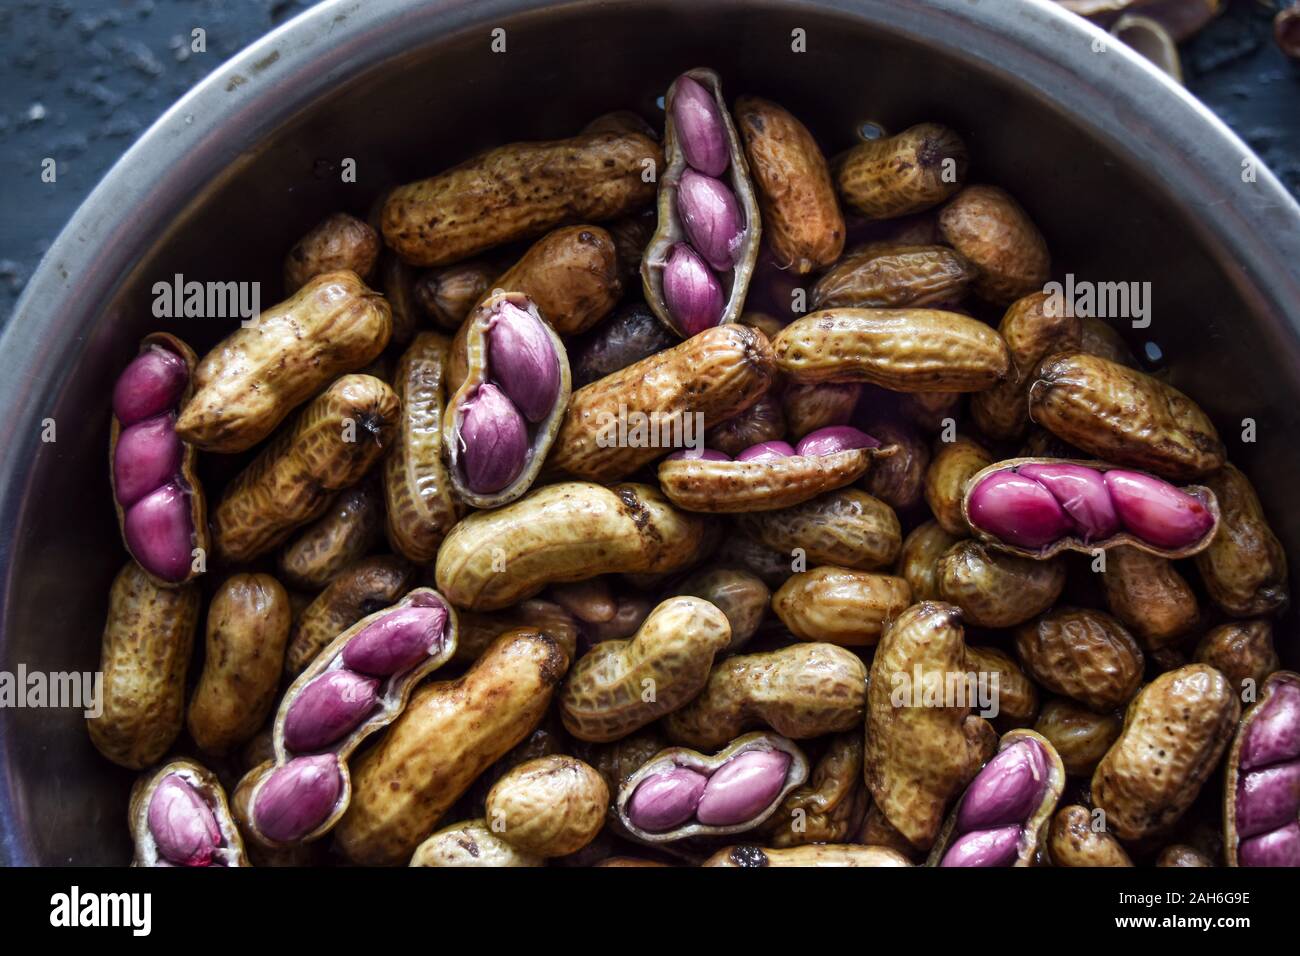 Top Shot gekochte Erdnüsse oder Erdnüsse, makroaufnahme der Erdnüsse, einige mit rosa Erdnüsse ohne Schale sichtbar Stockfoto